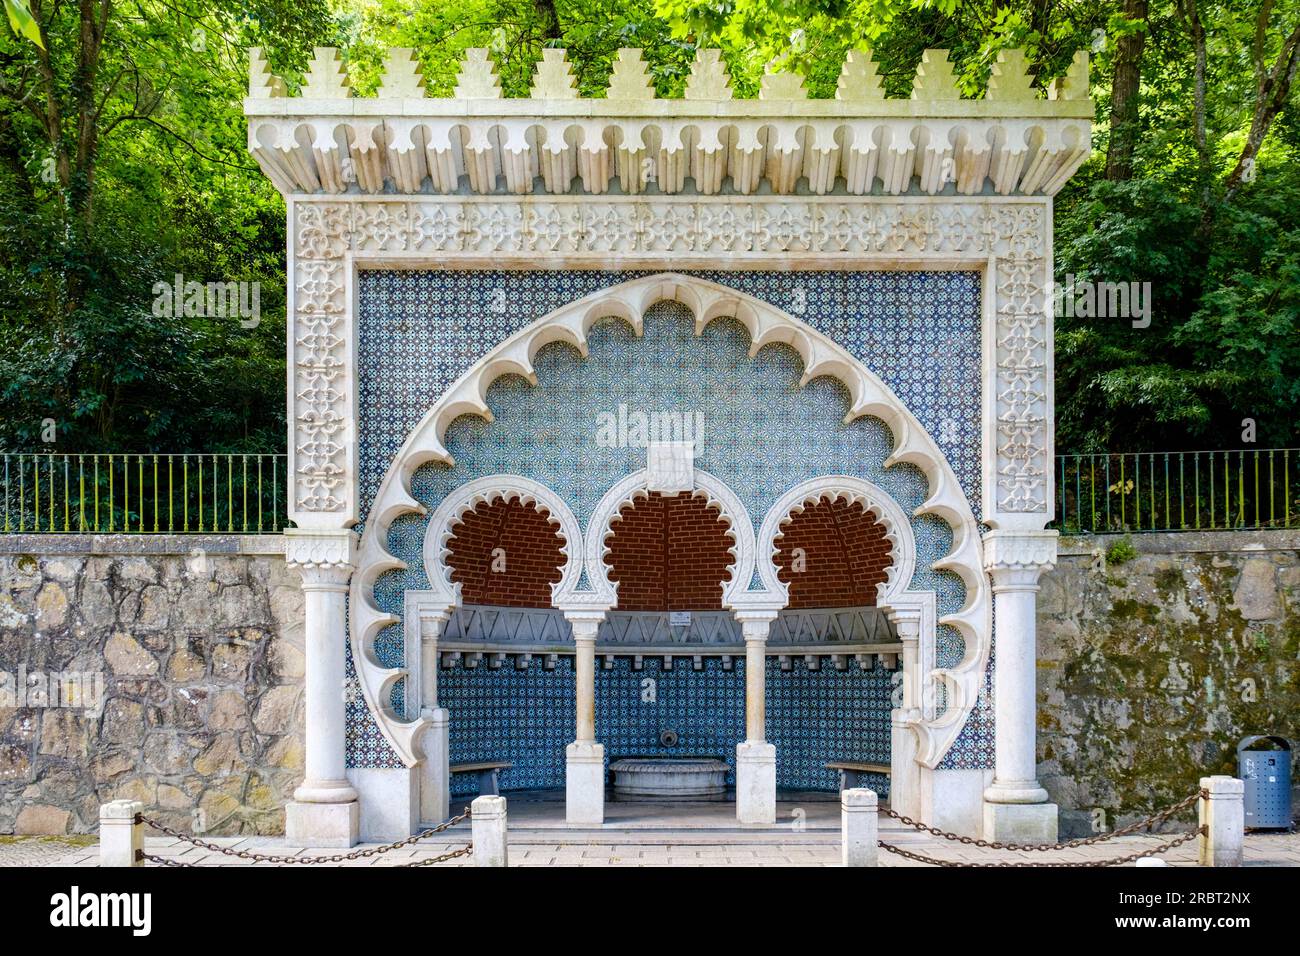 Fonte Mourisca, fontana moresca, fontana pubblica in stile architettonico neo-mudéjar con archi a ferro di cavallo, Sintra, Portogallo Foto Stock